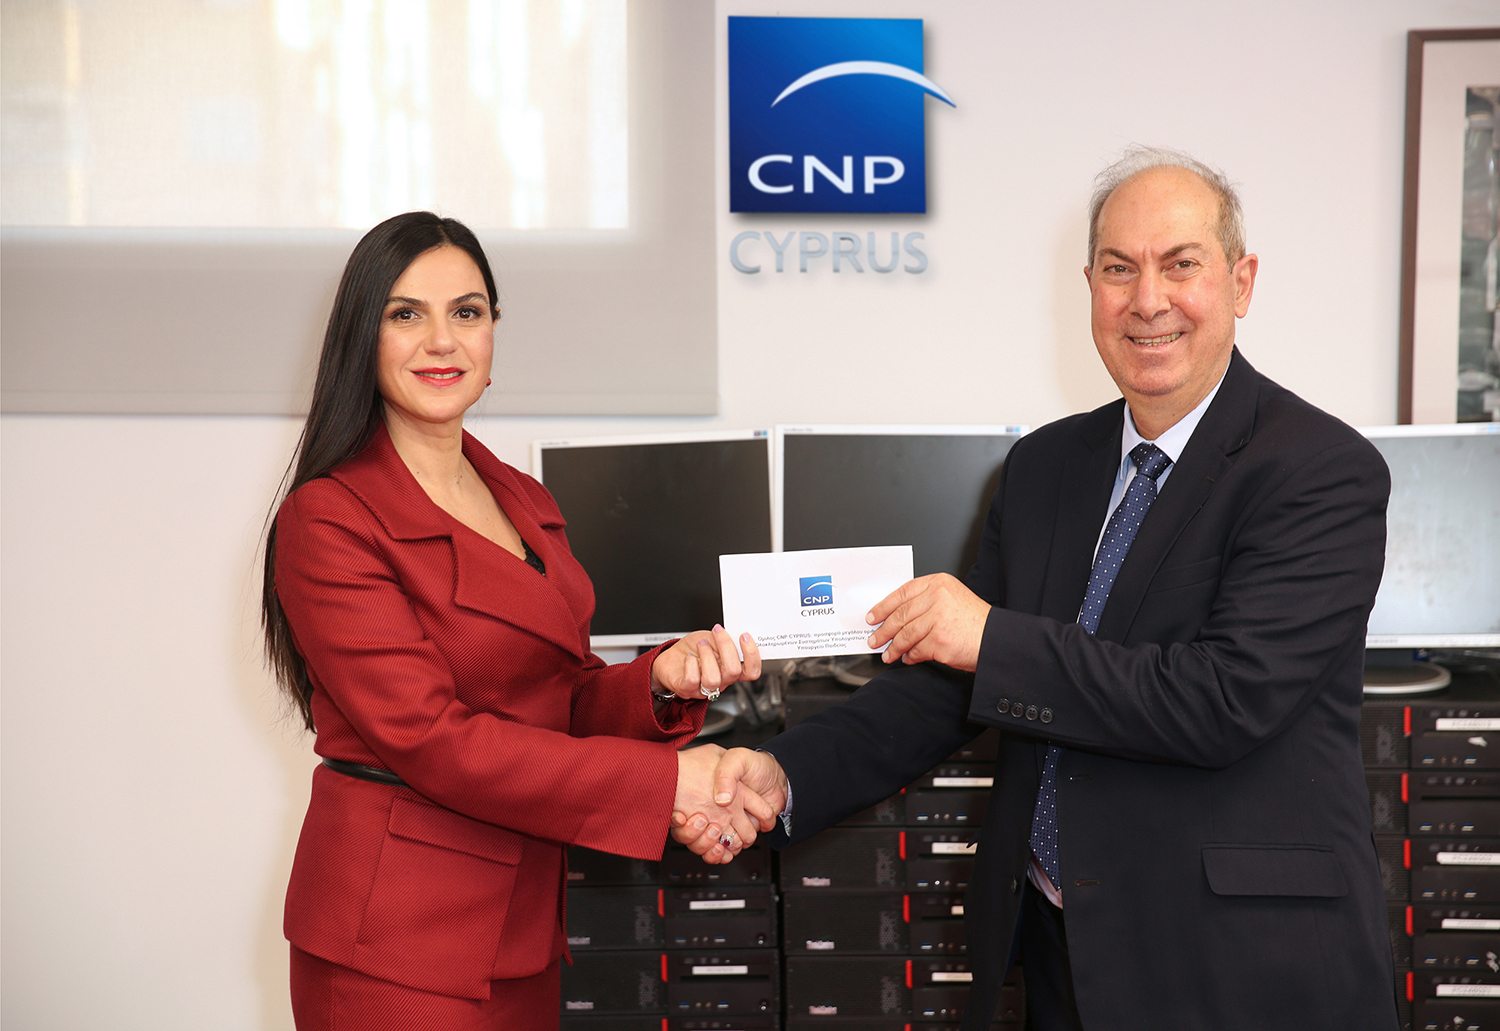 Όμιλος CNP CYPRUS: προσφορά μεγάλου αριθμού Ολοκληρωμένων Συστημάτων Υπολογιστών, προς το Υπουργείο Παιδείας